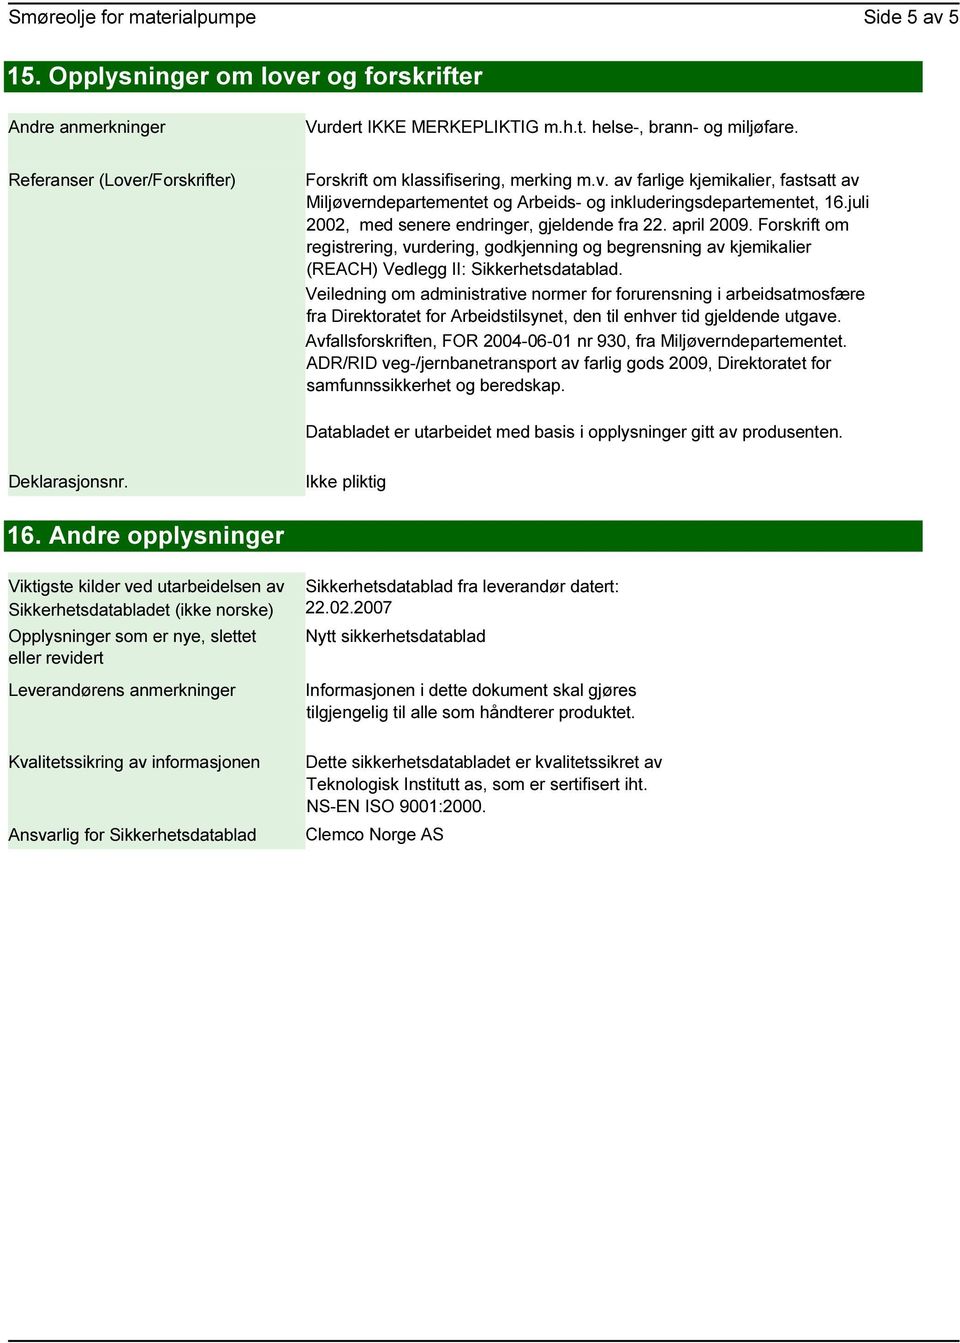 juli 2002, med senere endringer, gjeldende fra 22. april 2009. Forskrift om registrering, vurdering, godkjenning og begrensning av kjemikalier (REACH) Vedlegg II: Sikkerhetsdatablad.